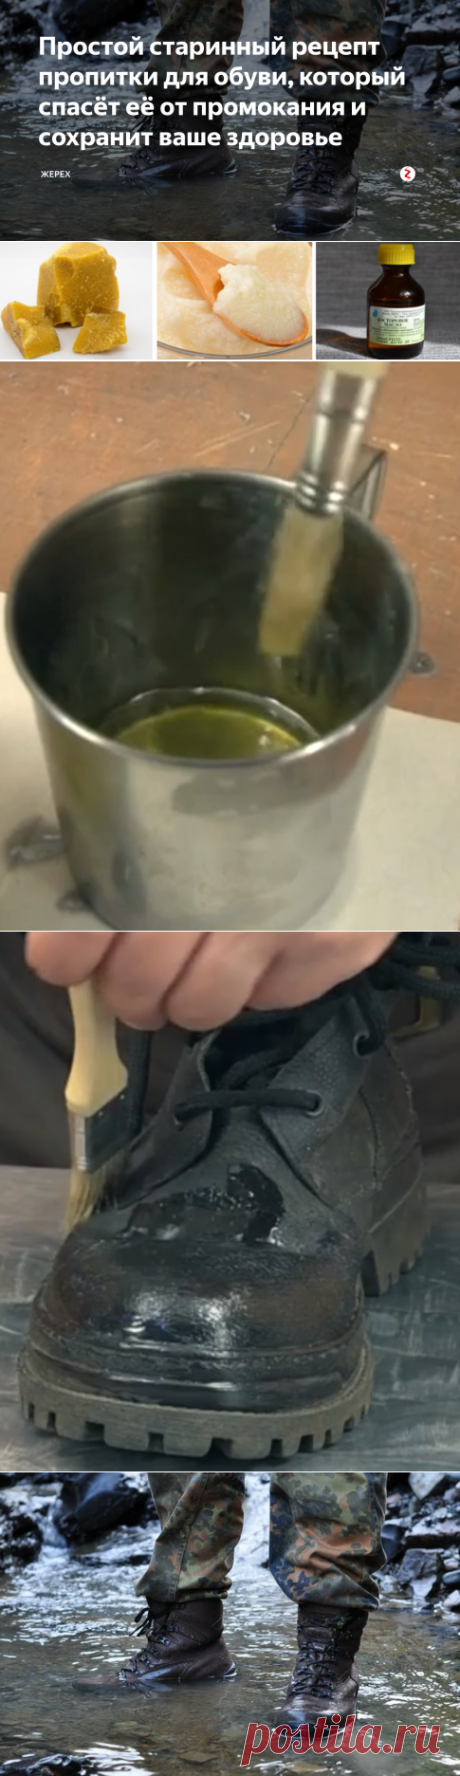 Простой старинный рецепт пропитки для обуви, который спасёт её от промокания и сохранит ваше здоровье | жерех | Яндекс Дзен